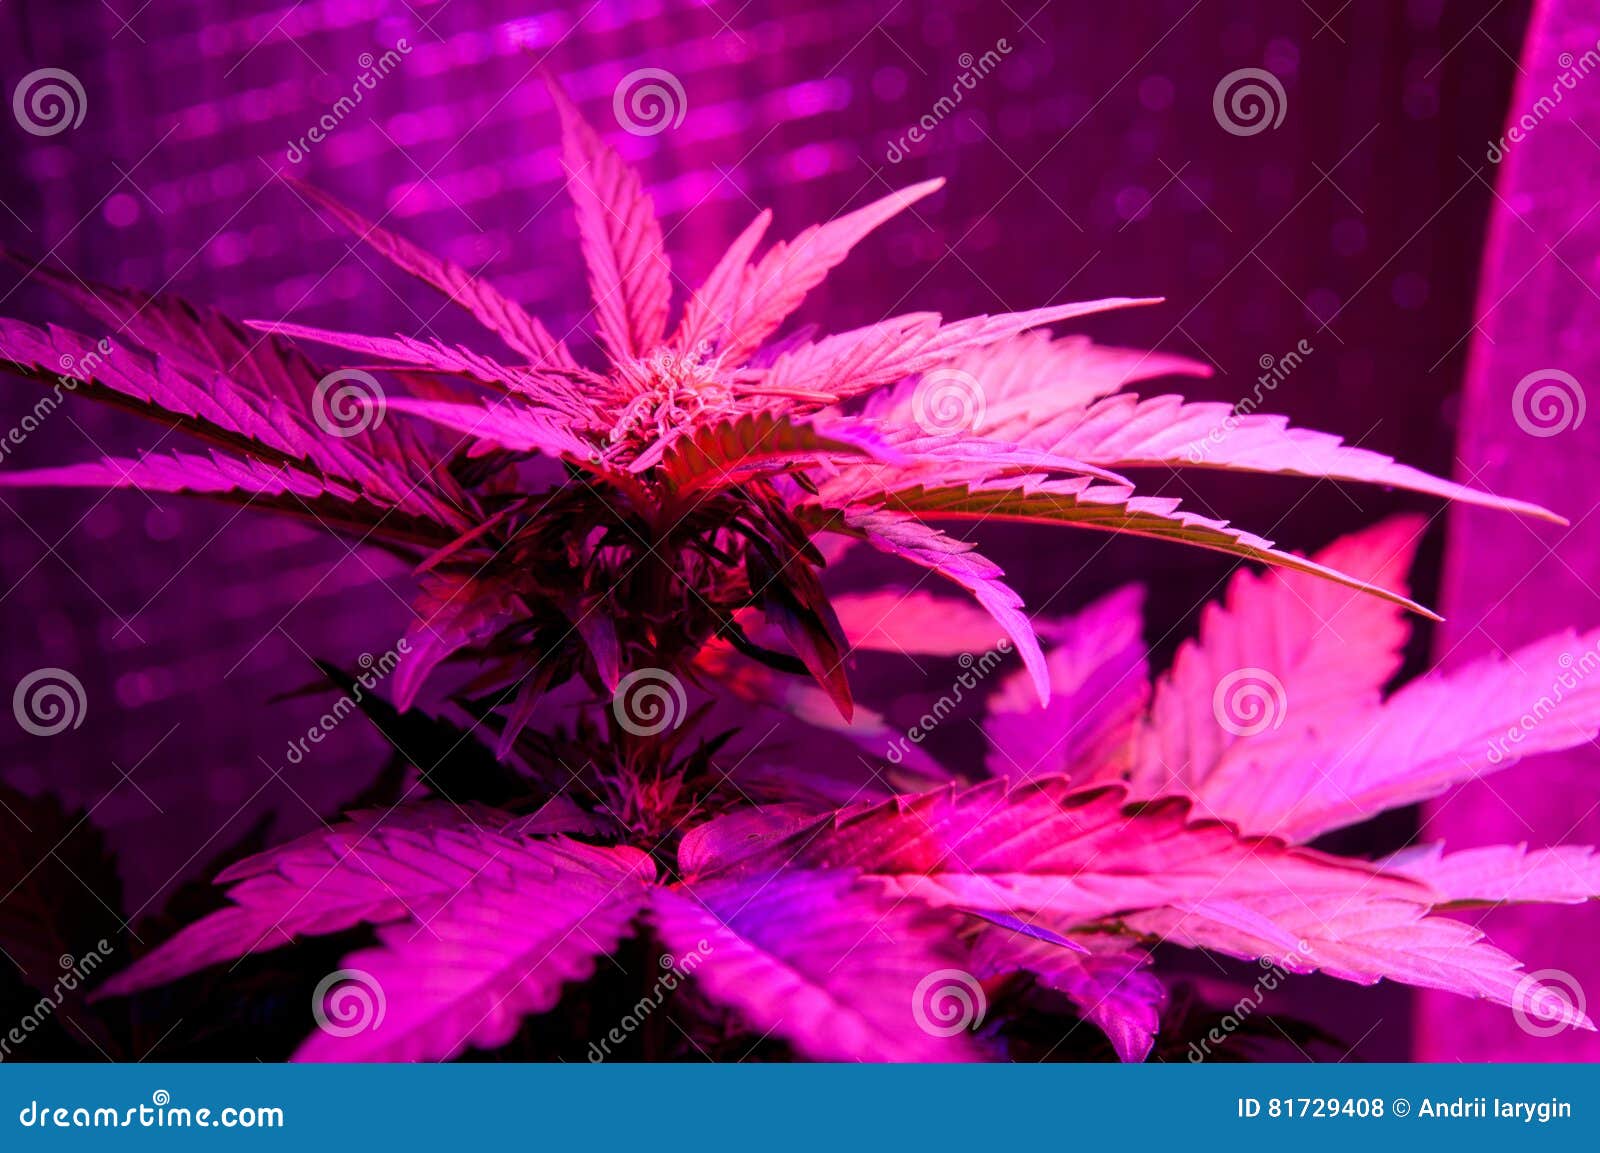 Розовая конопля фото где придумали марихуану